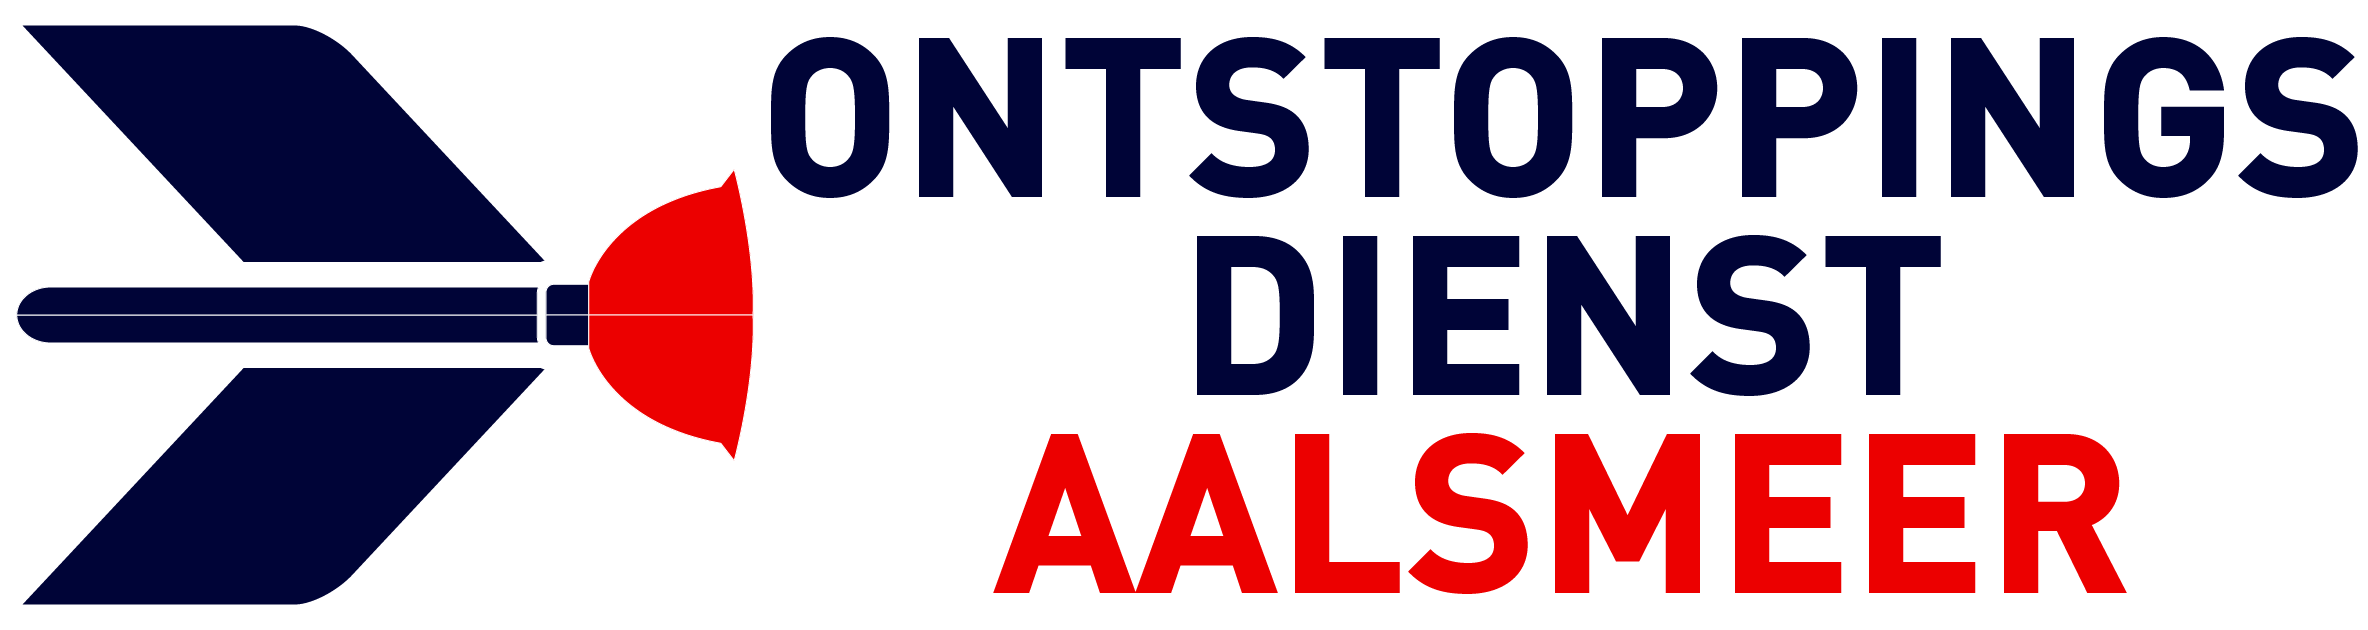 Ontstoppingsdienst Aalsmeer logo